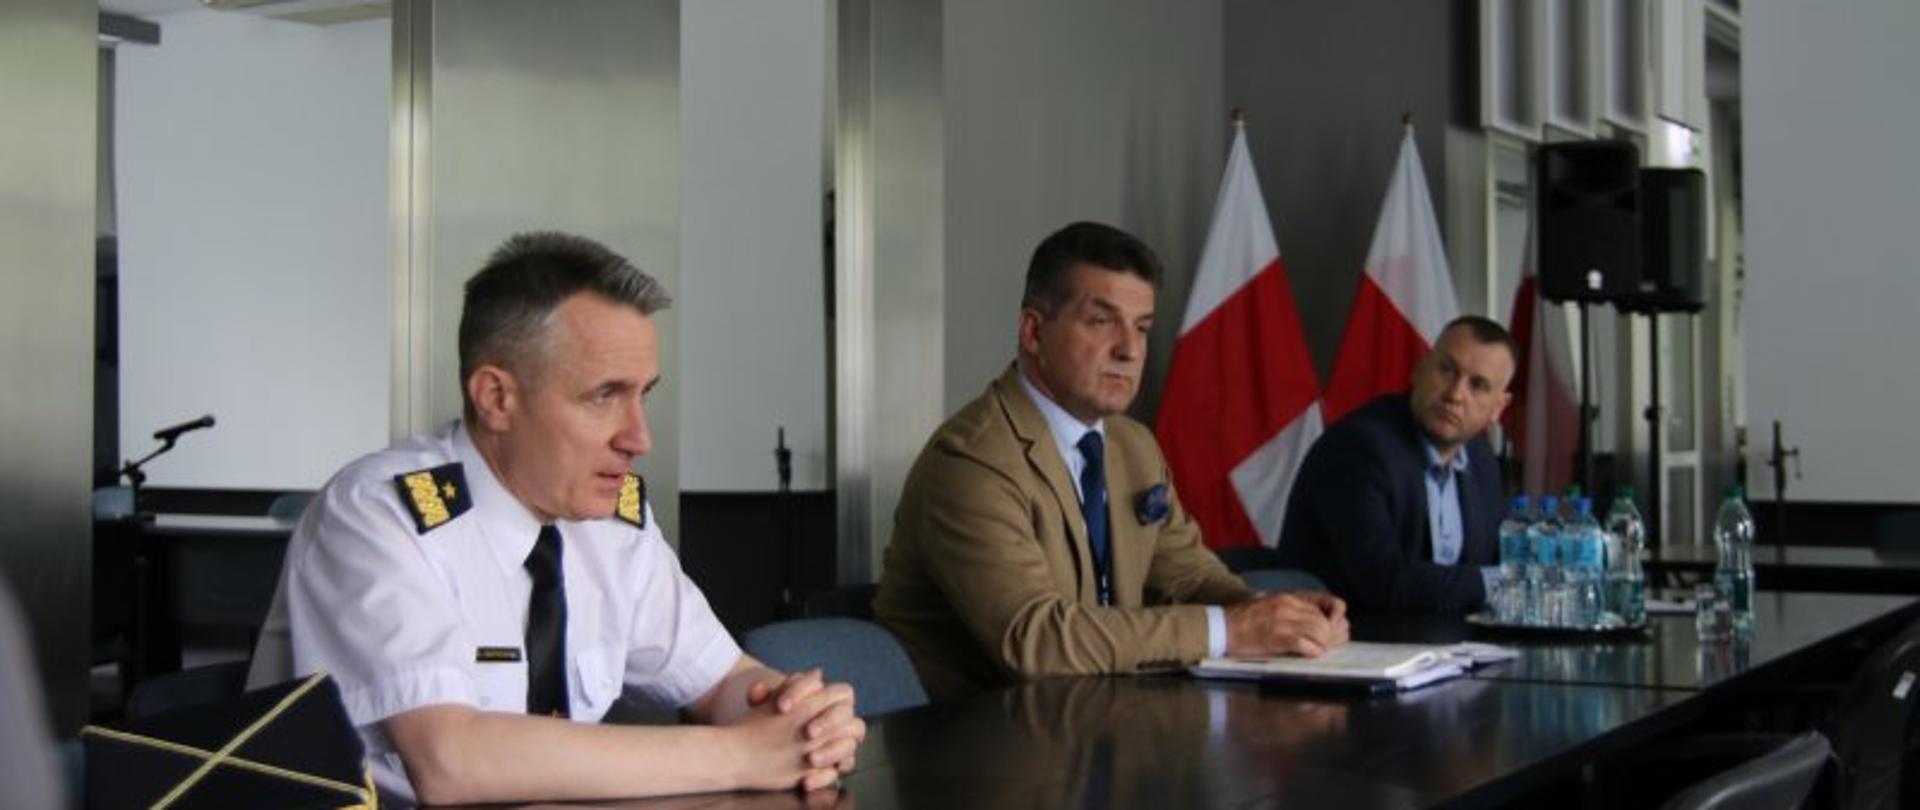 Spotkanie Komendanta Głównego PSP z Prezydium Zarządu Krajowego ZZS „Florian” – na zdjęciu uczestnicy spotkania dyskutują przy stole. W tle dwie flagi biało-czerwone.